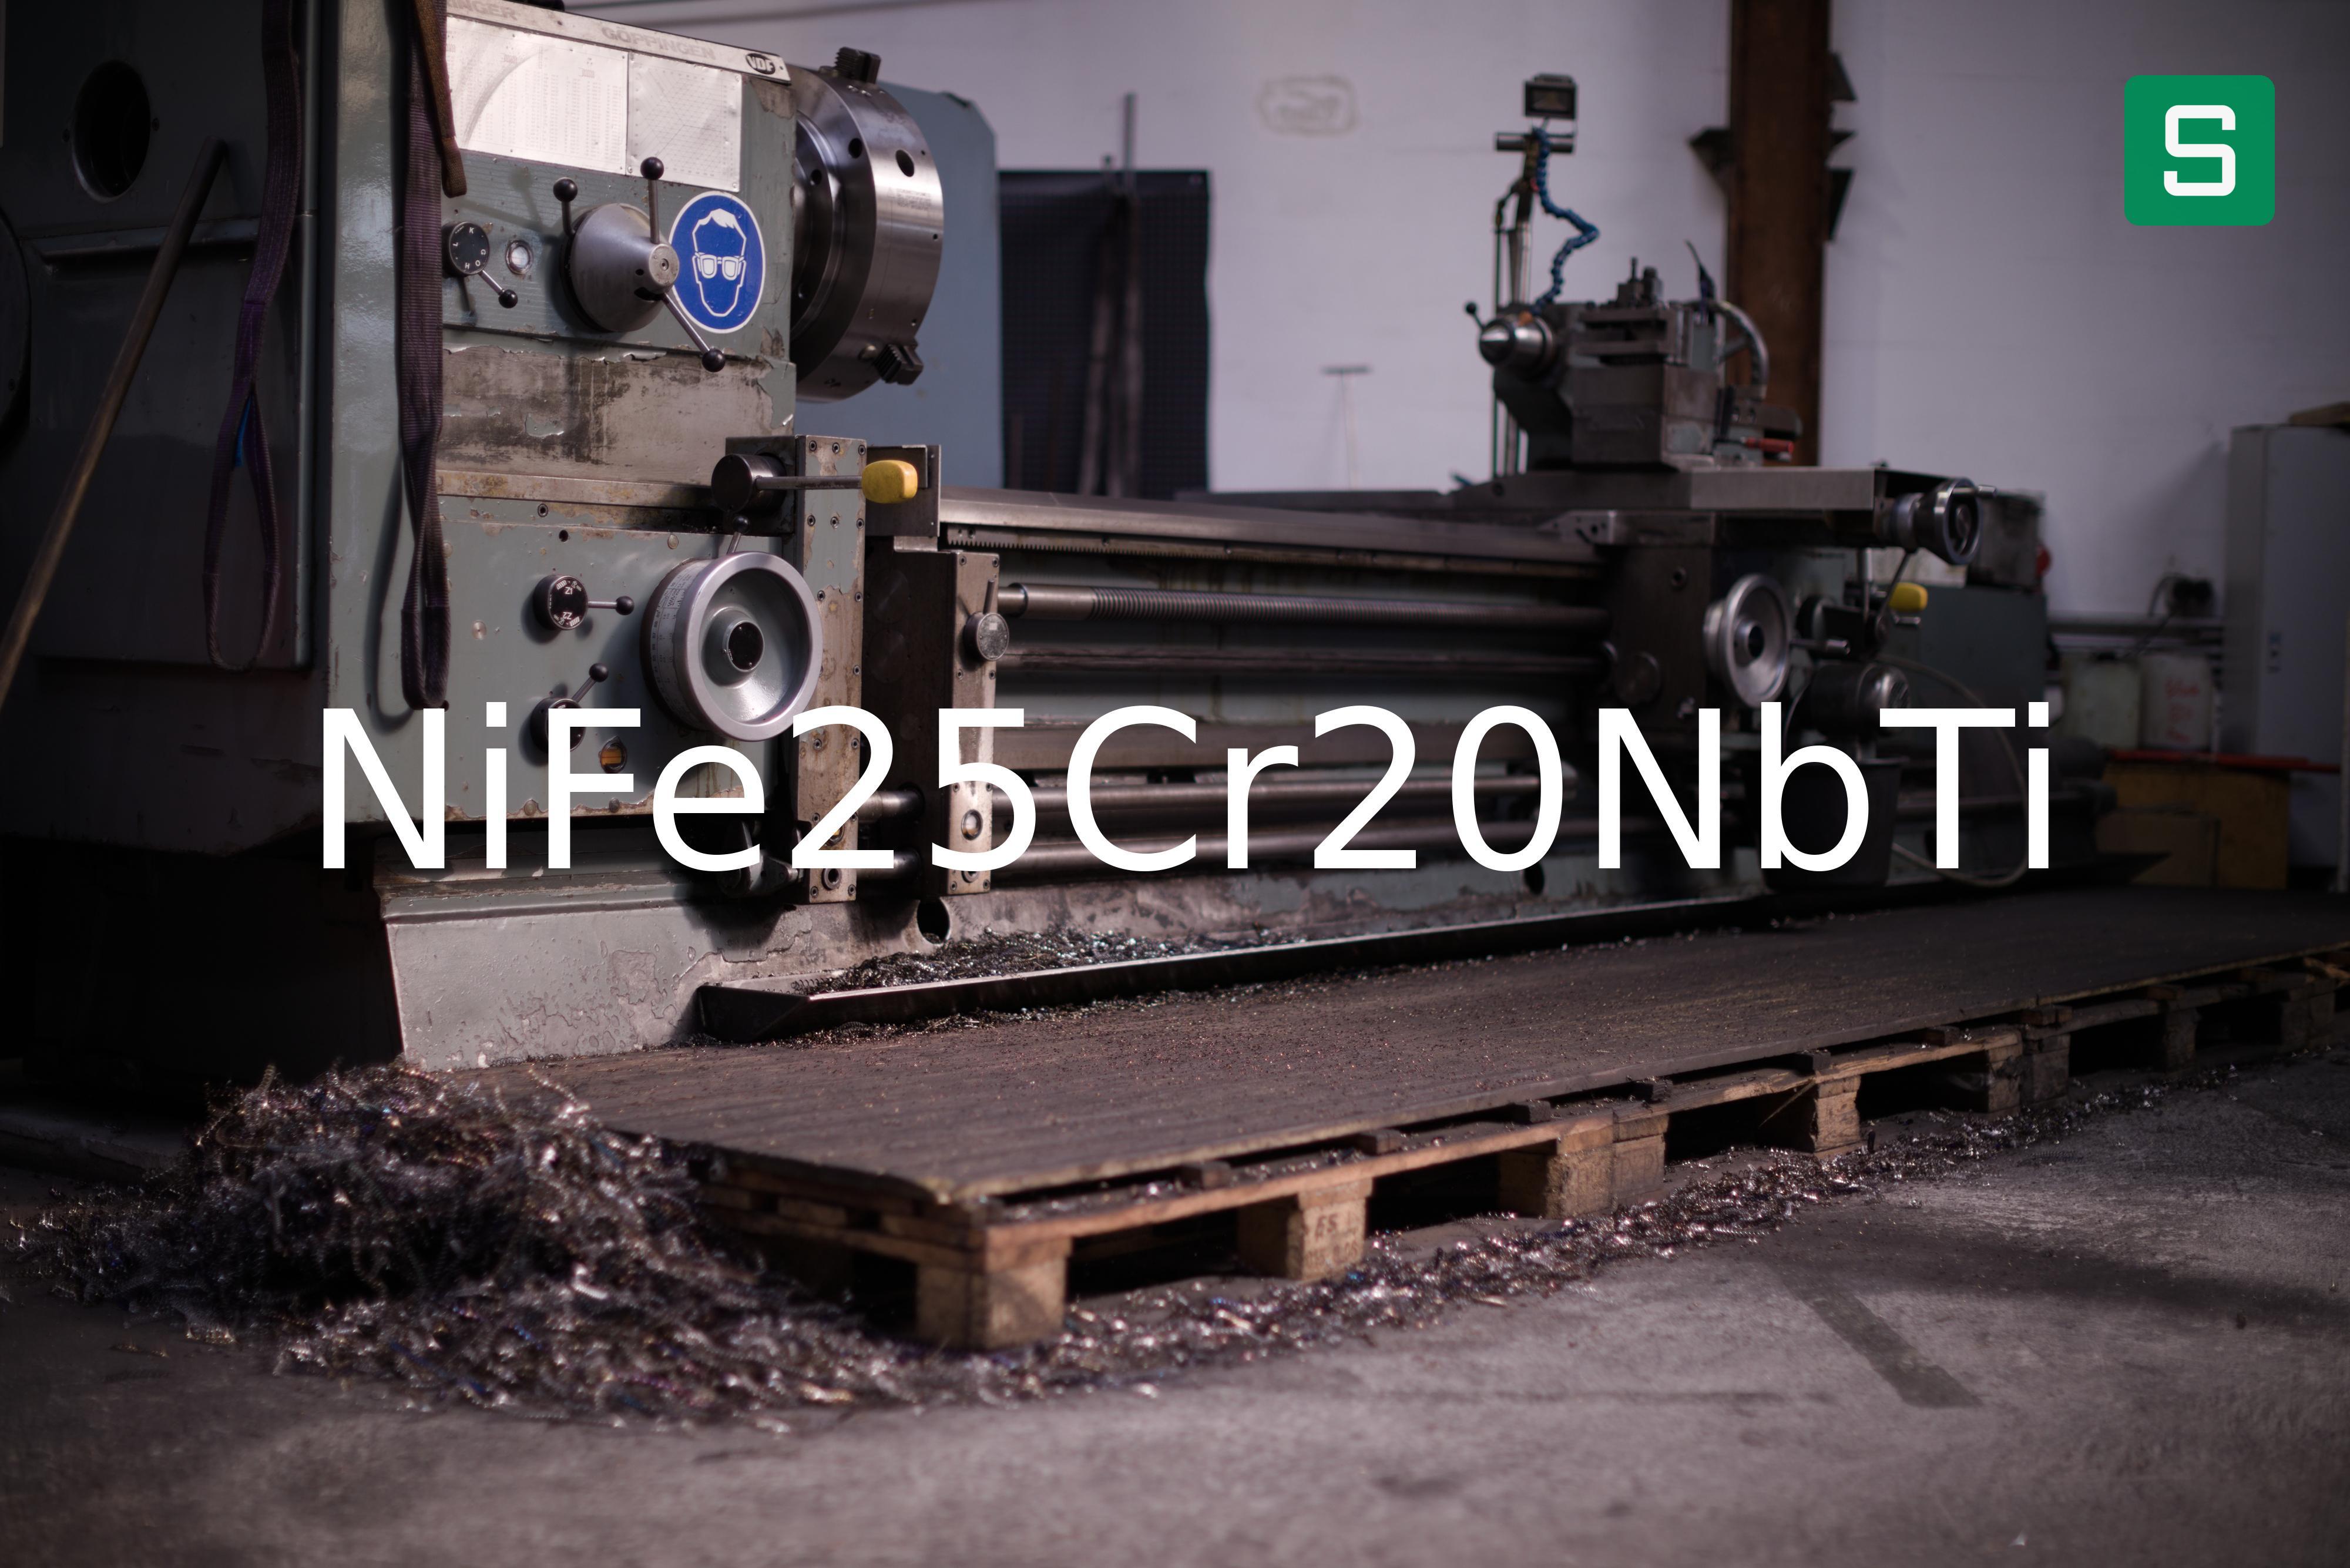 Steel Material: NiFe25Cr20NbTi